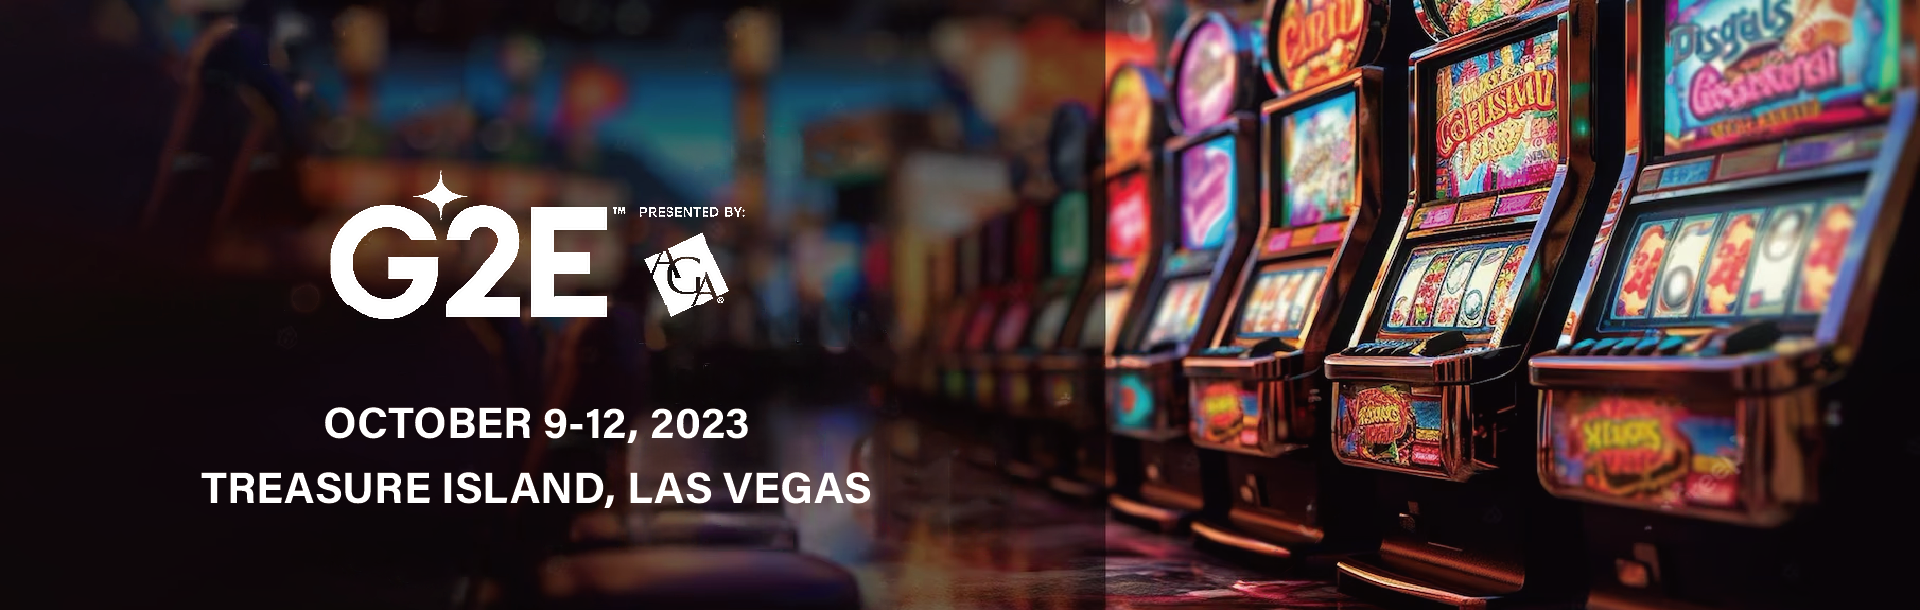 Wenn Sie gerne spielen, dann ist G2E in Las Vegas der richtige Ort für Sie.